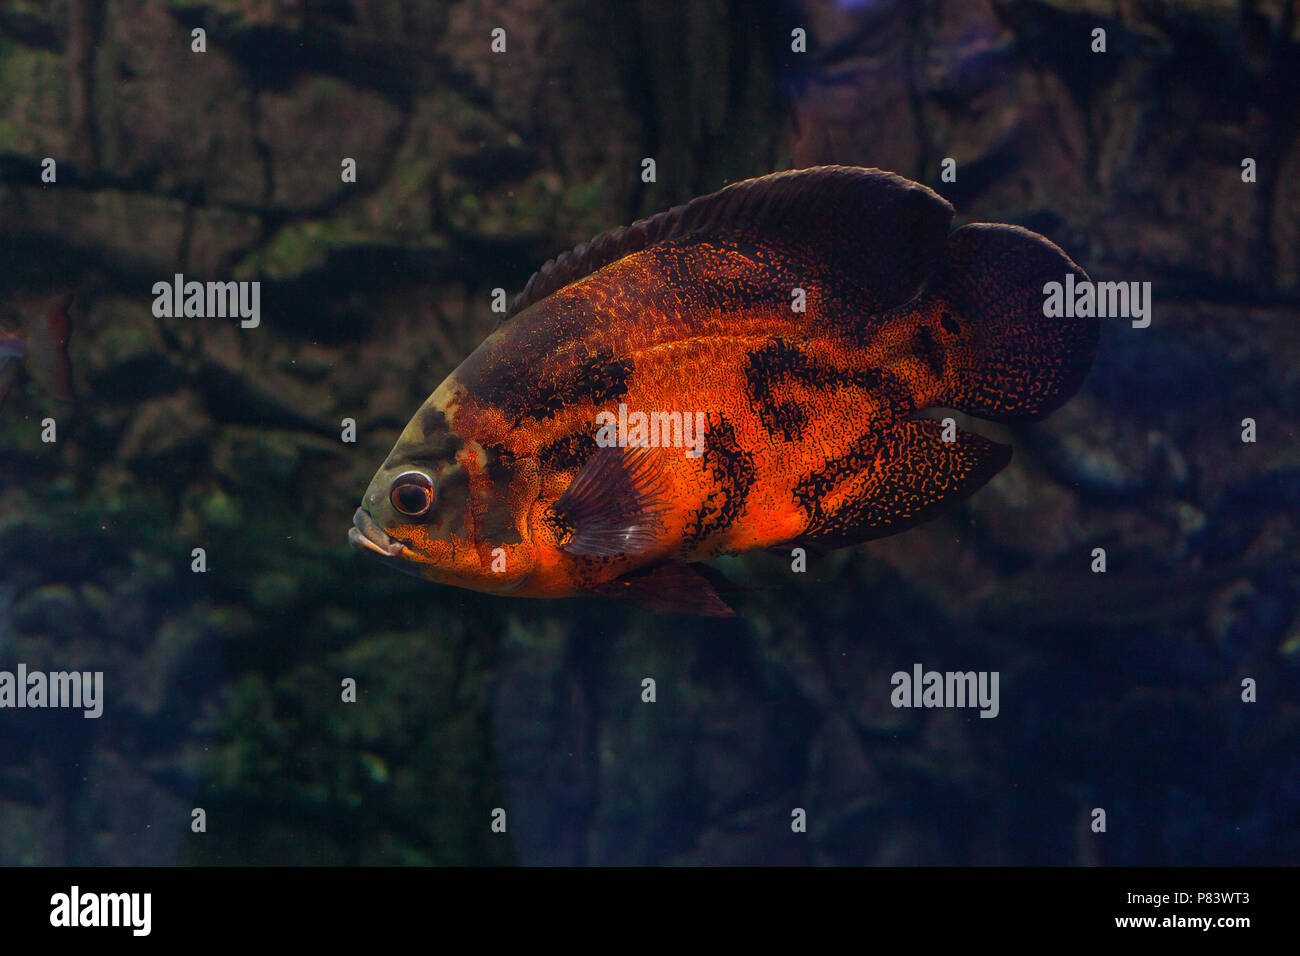 Astronotus floating in the aquarium. Oscar fish Stock Photo